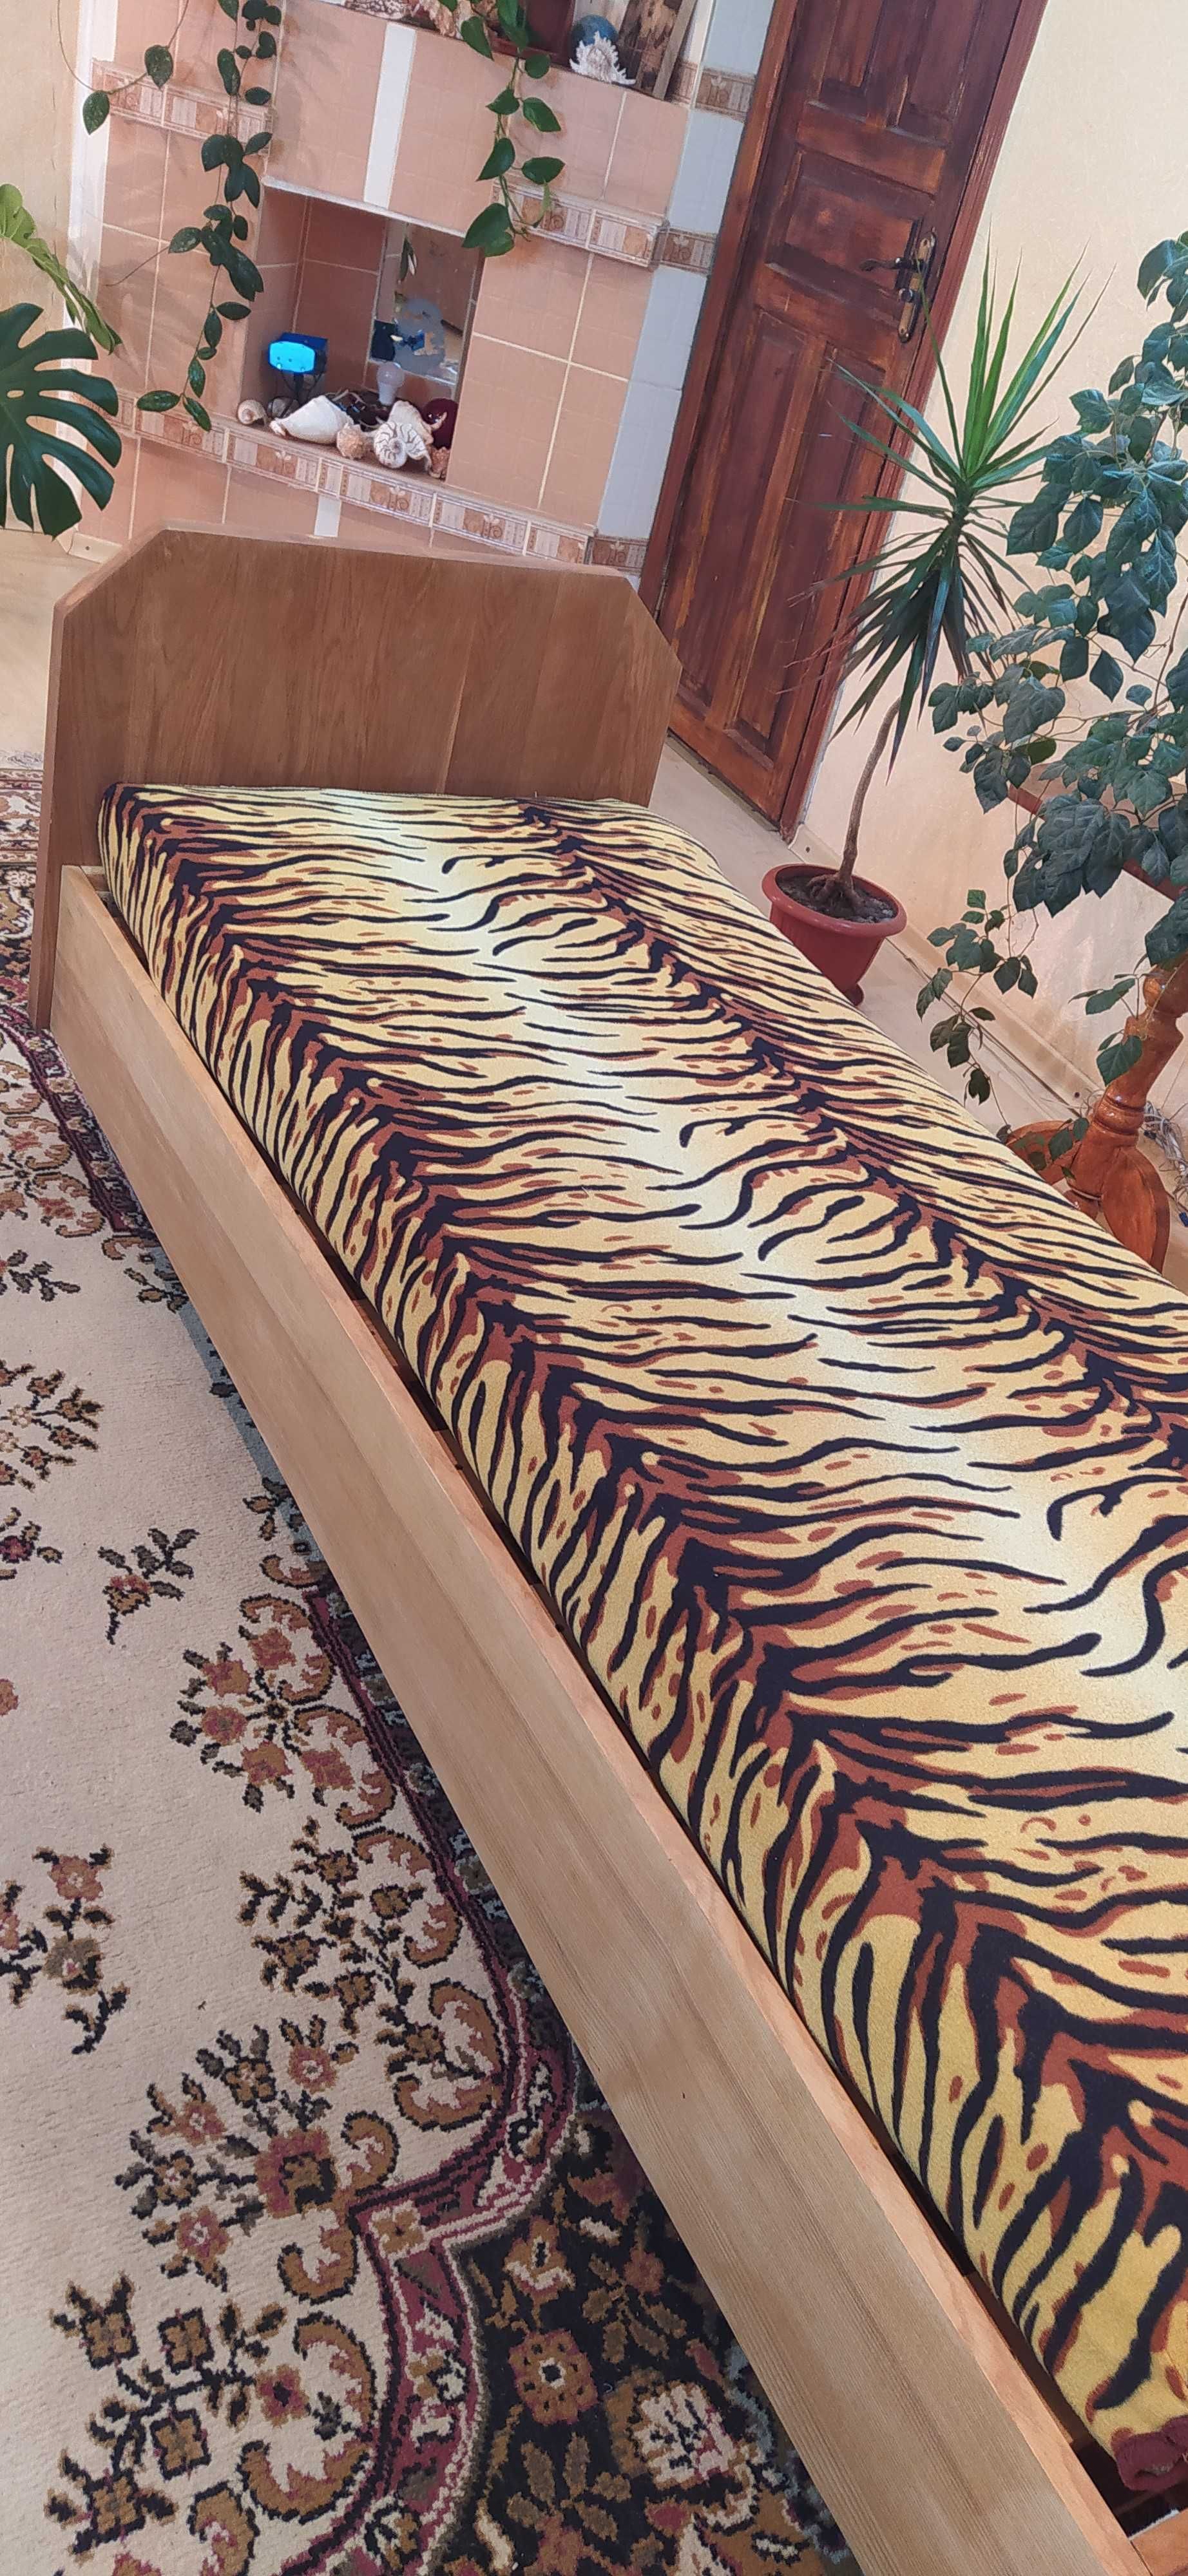 Кровать из натурального дерева (дуб) с матрасом.